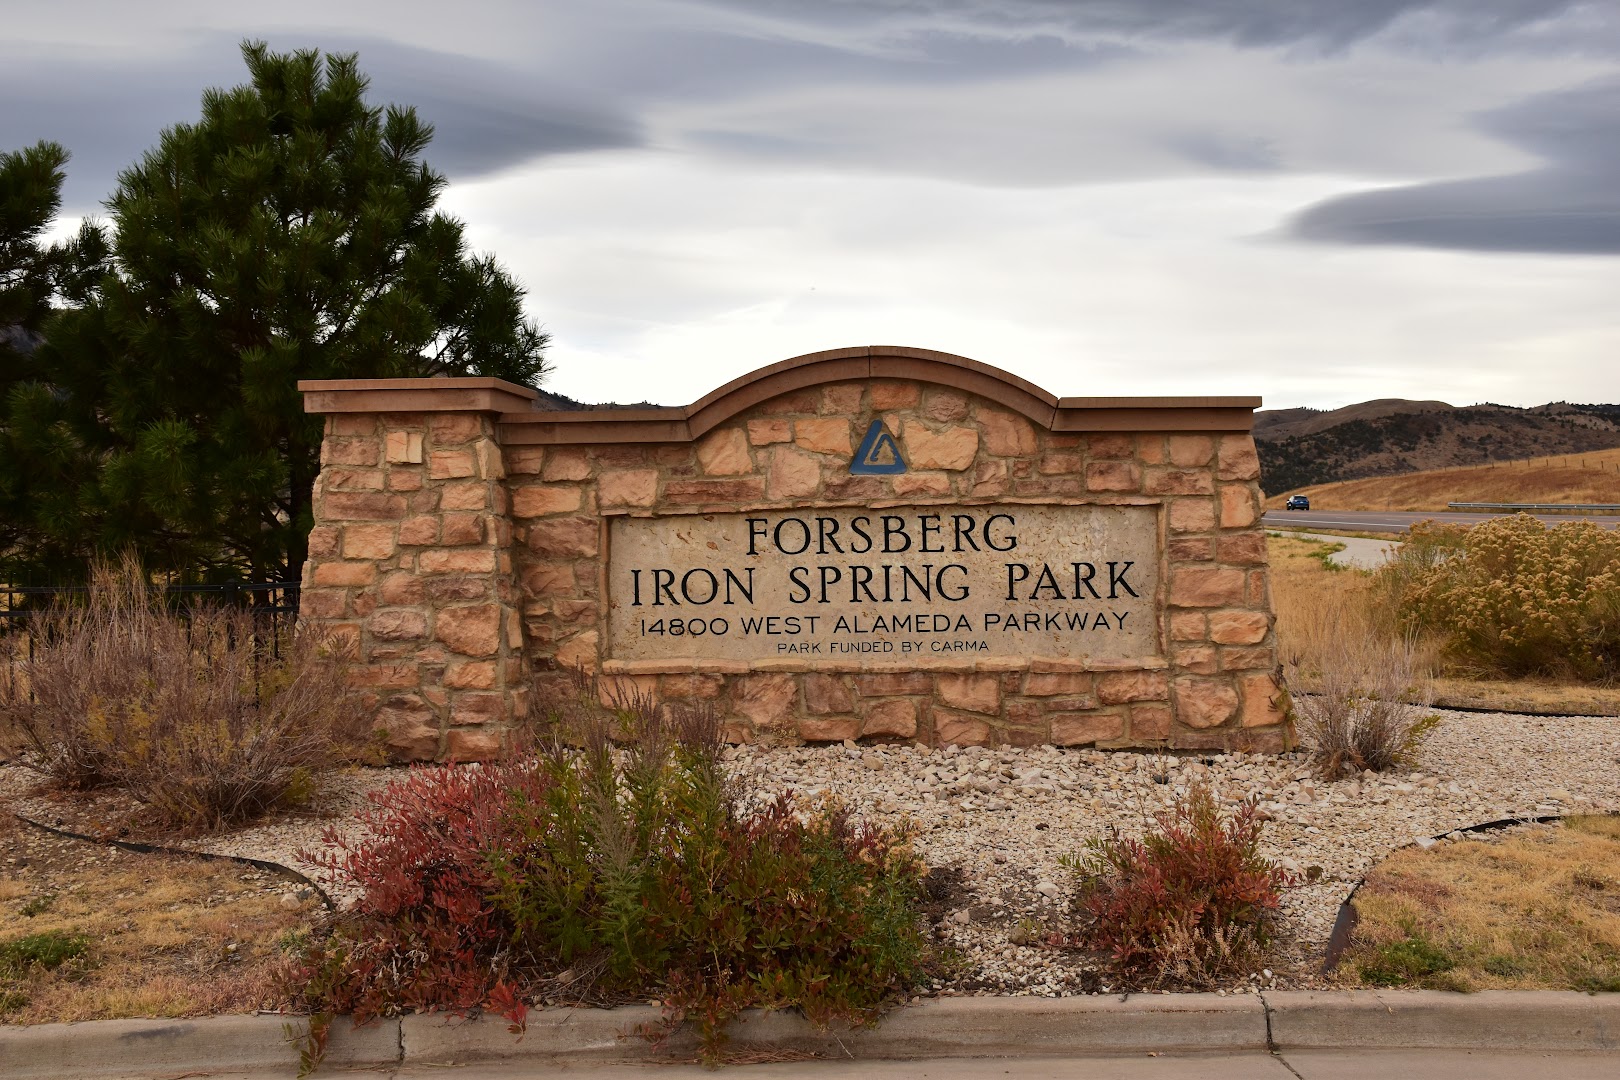 Forsberg Iron Spring Park